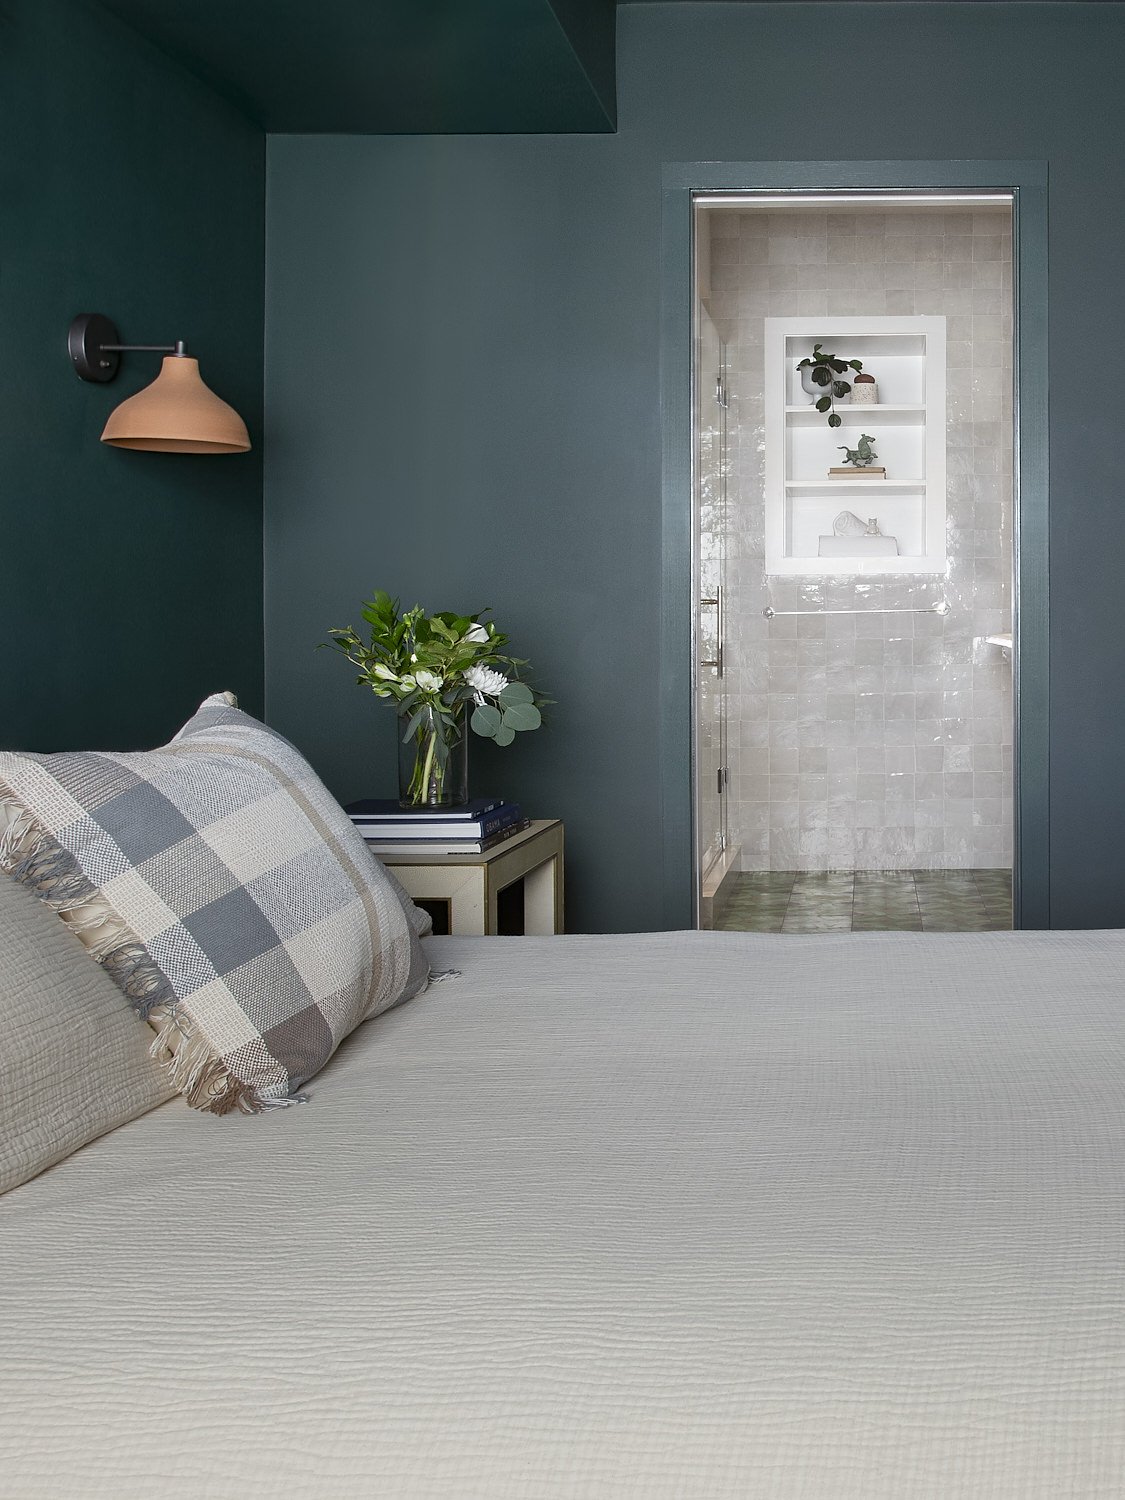 claremont-bedroom-green-0.jpg